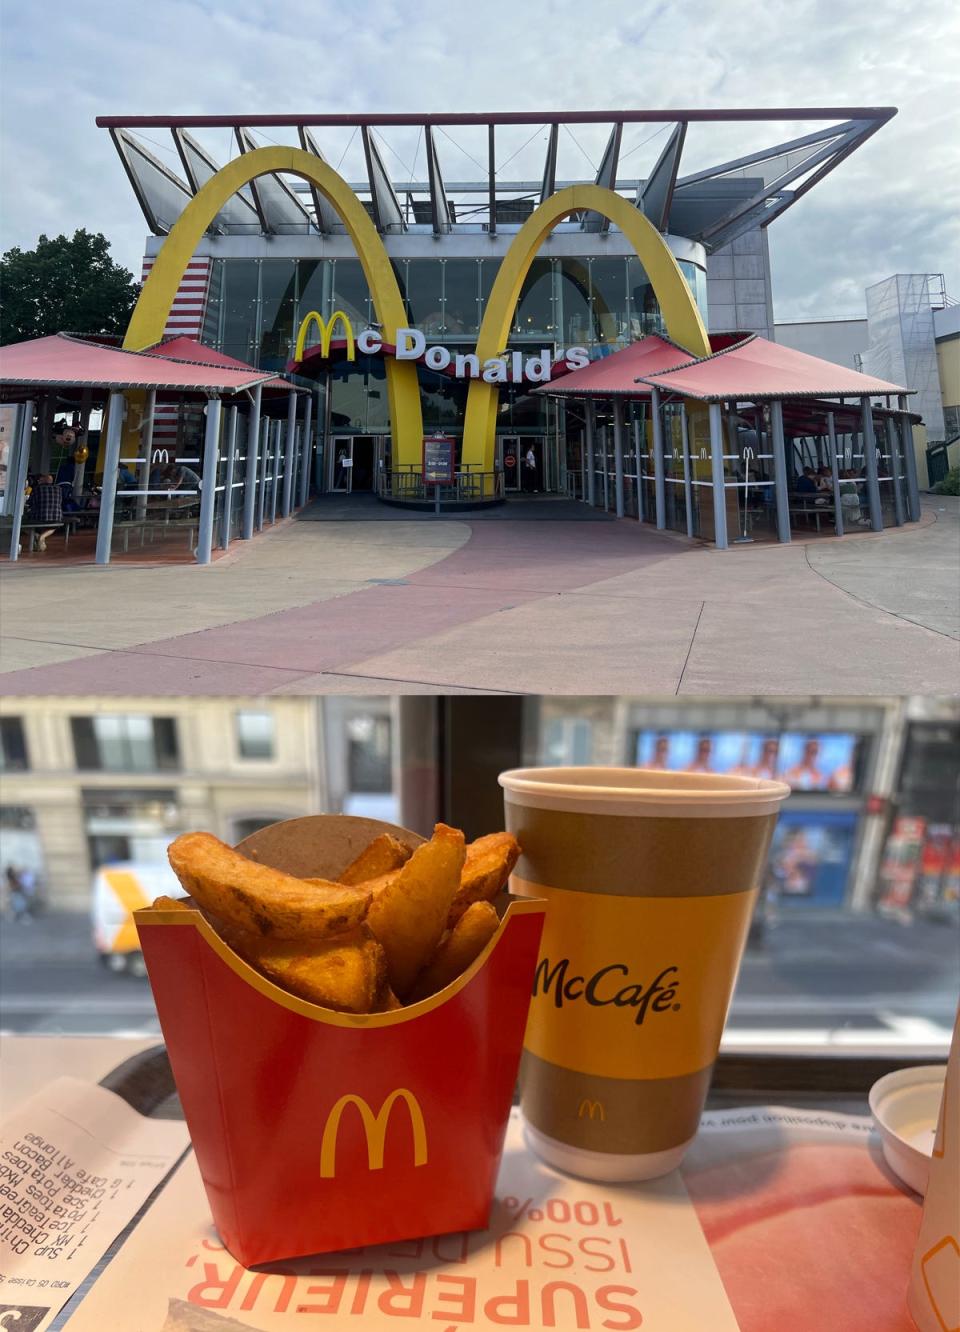 McDonald's in France